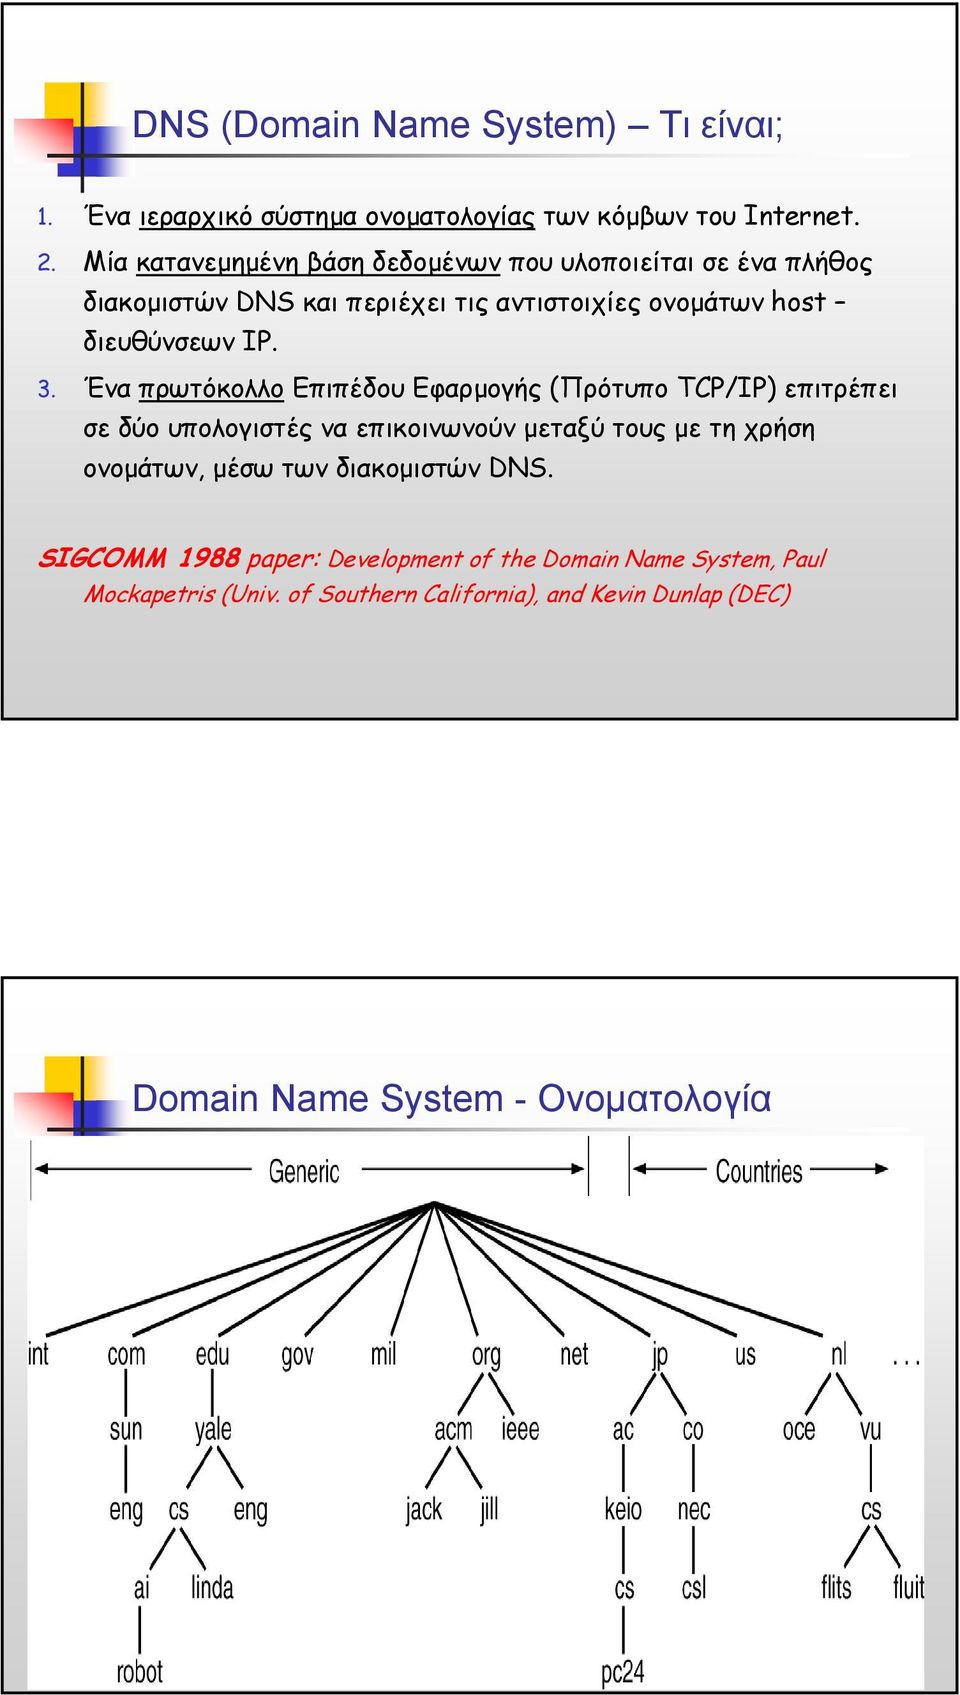 Ένα πρωτόκολλο Επιπέδου Εφαρµογής (Πρότυπο TCP/IP) επιτρέπει σε δύο υπολογιστές να επικοινωνούν µεταξύ τους µε τη χρήση ονοµάτων, µέσω των